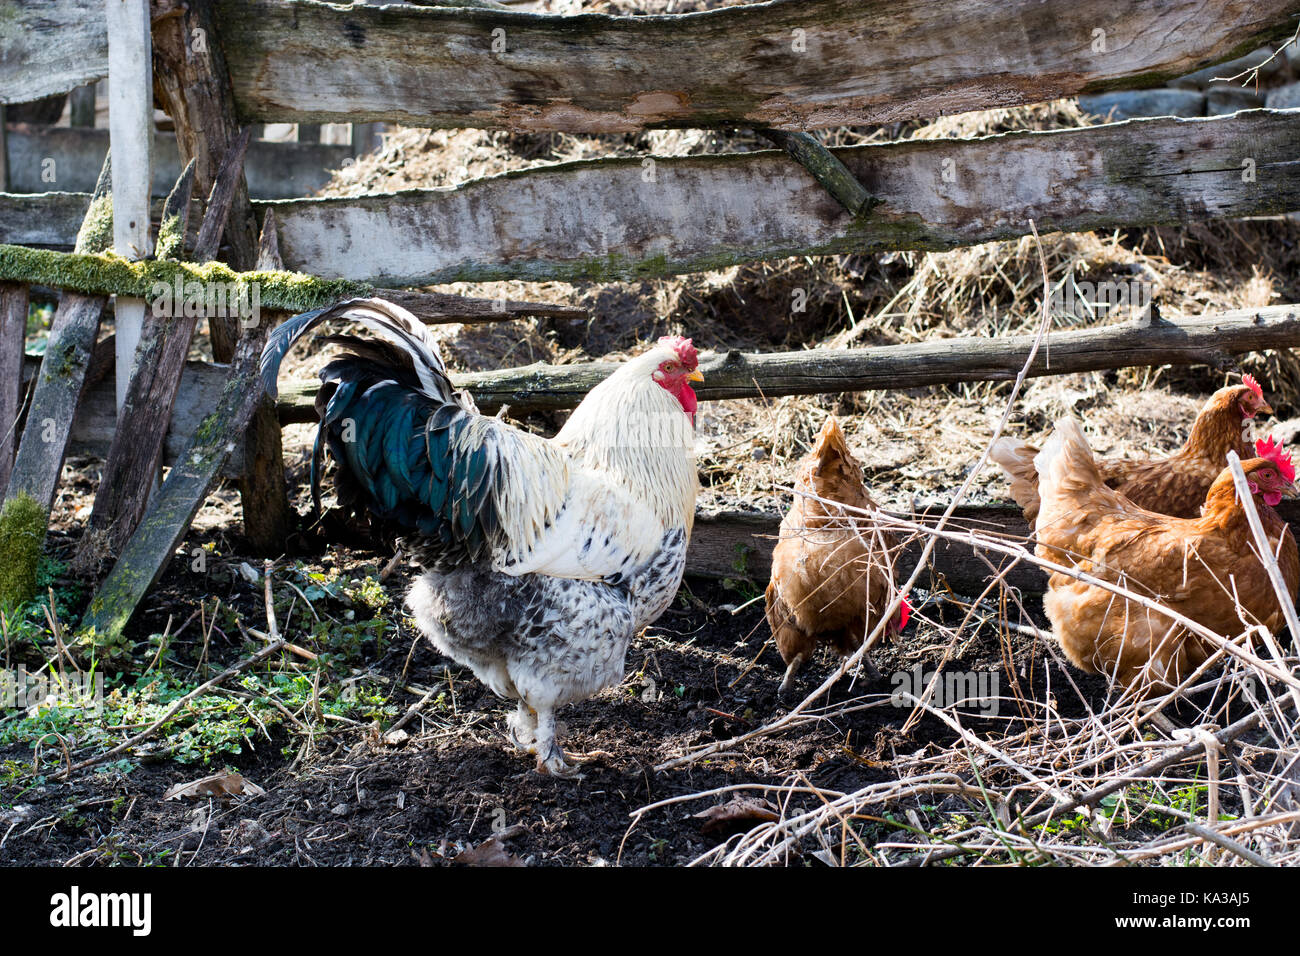 Las gallinas y el gallo se alimentan en la tradicional rural de corral en día soleado. Cerca de pollo parado en el granero del gallinero. free range poul Foto de stock